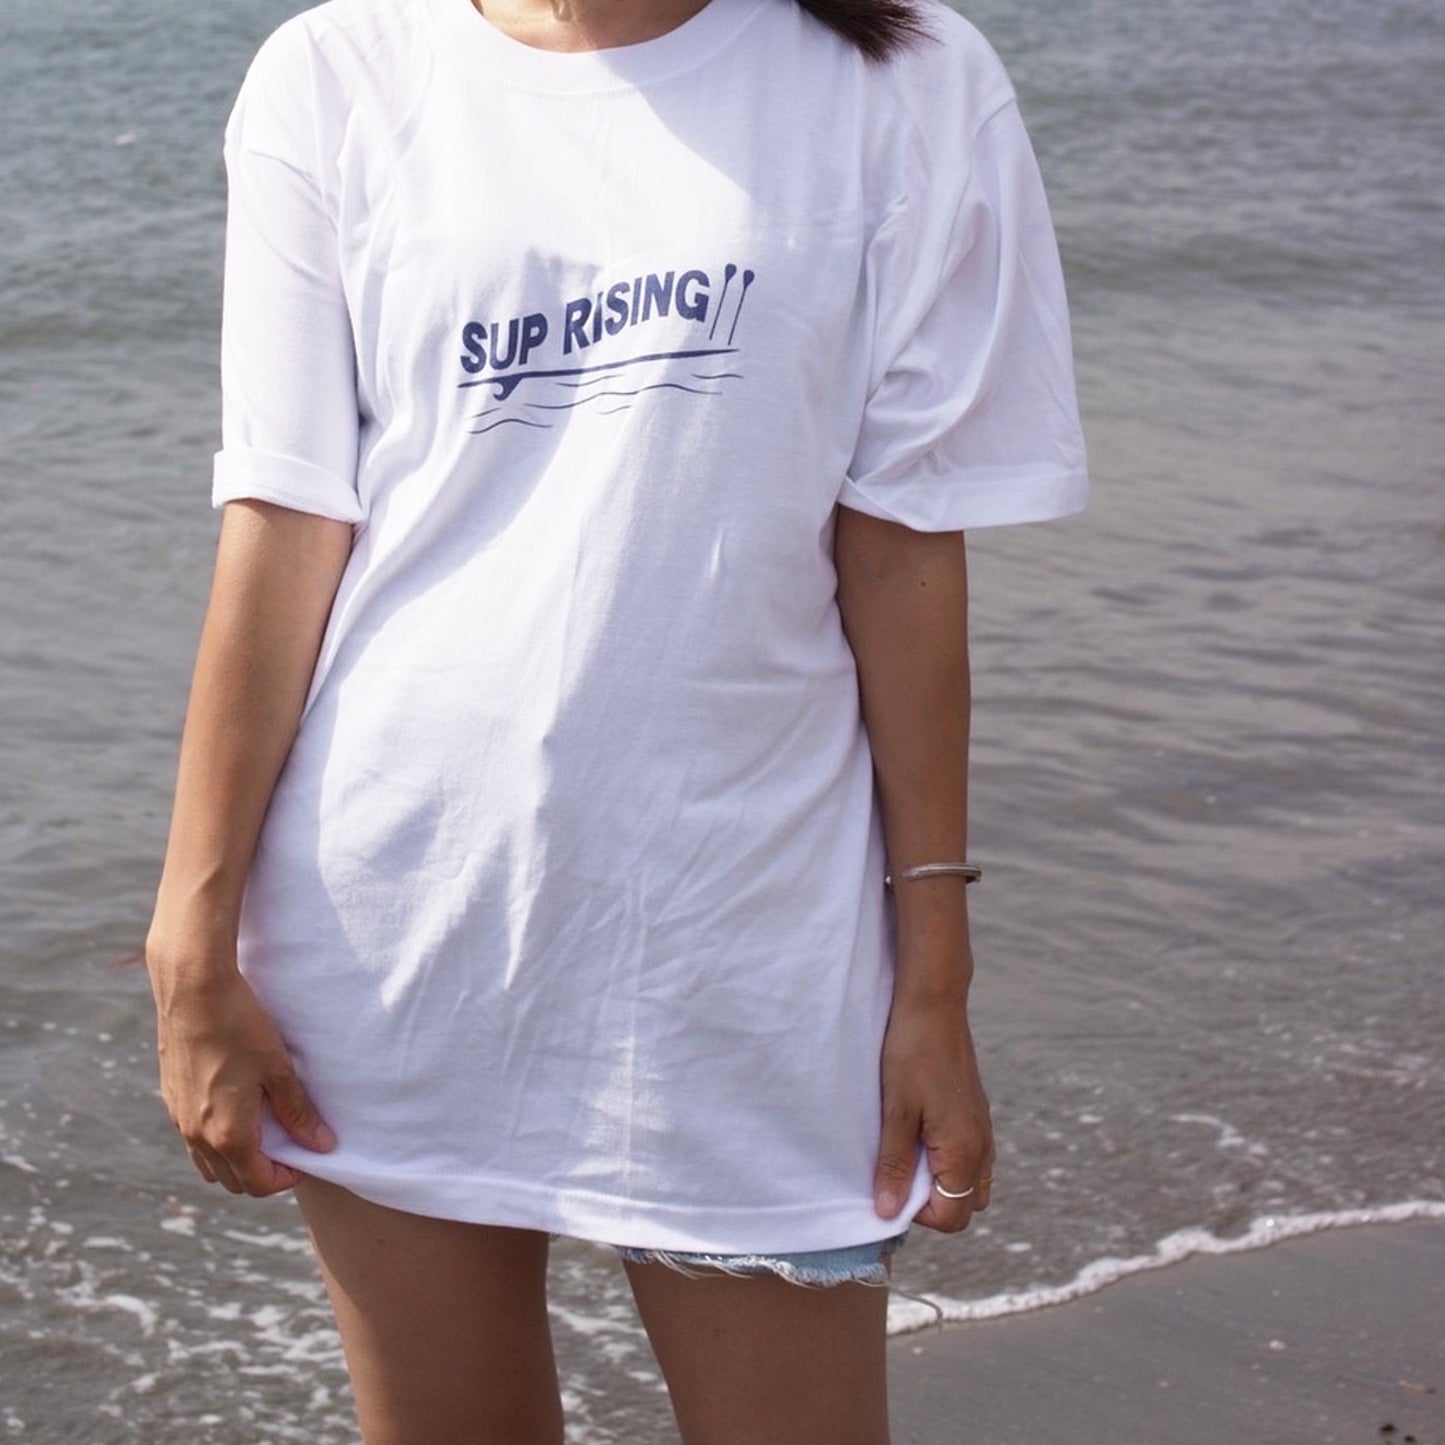 【完全受注生産】sup rising チャリティーTシャツ(men's Lサイズ)